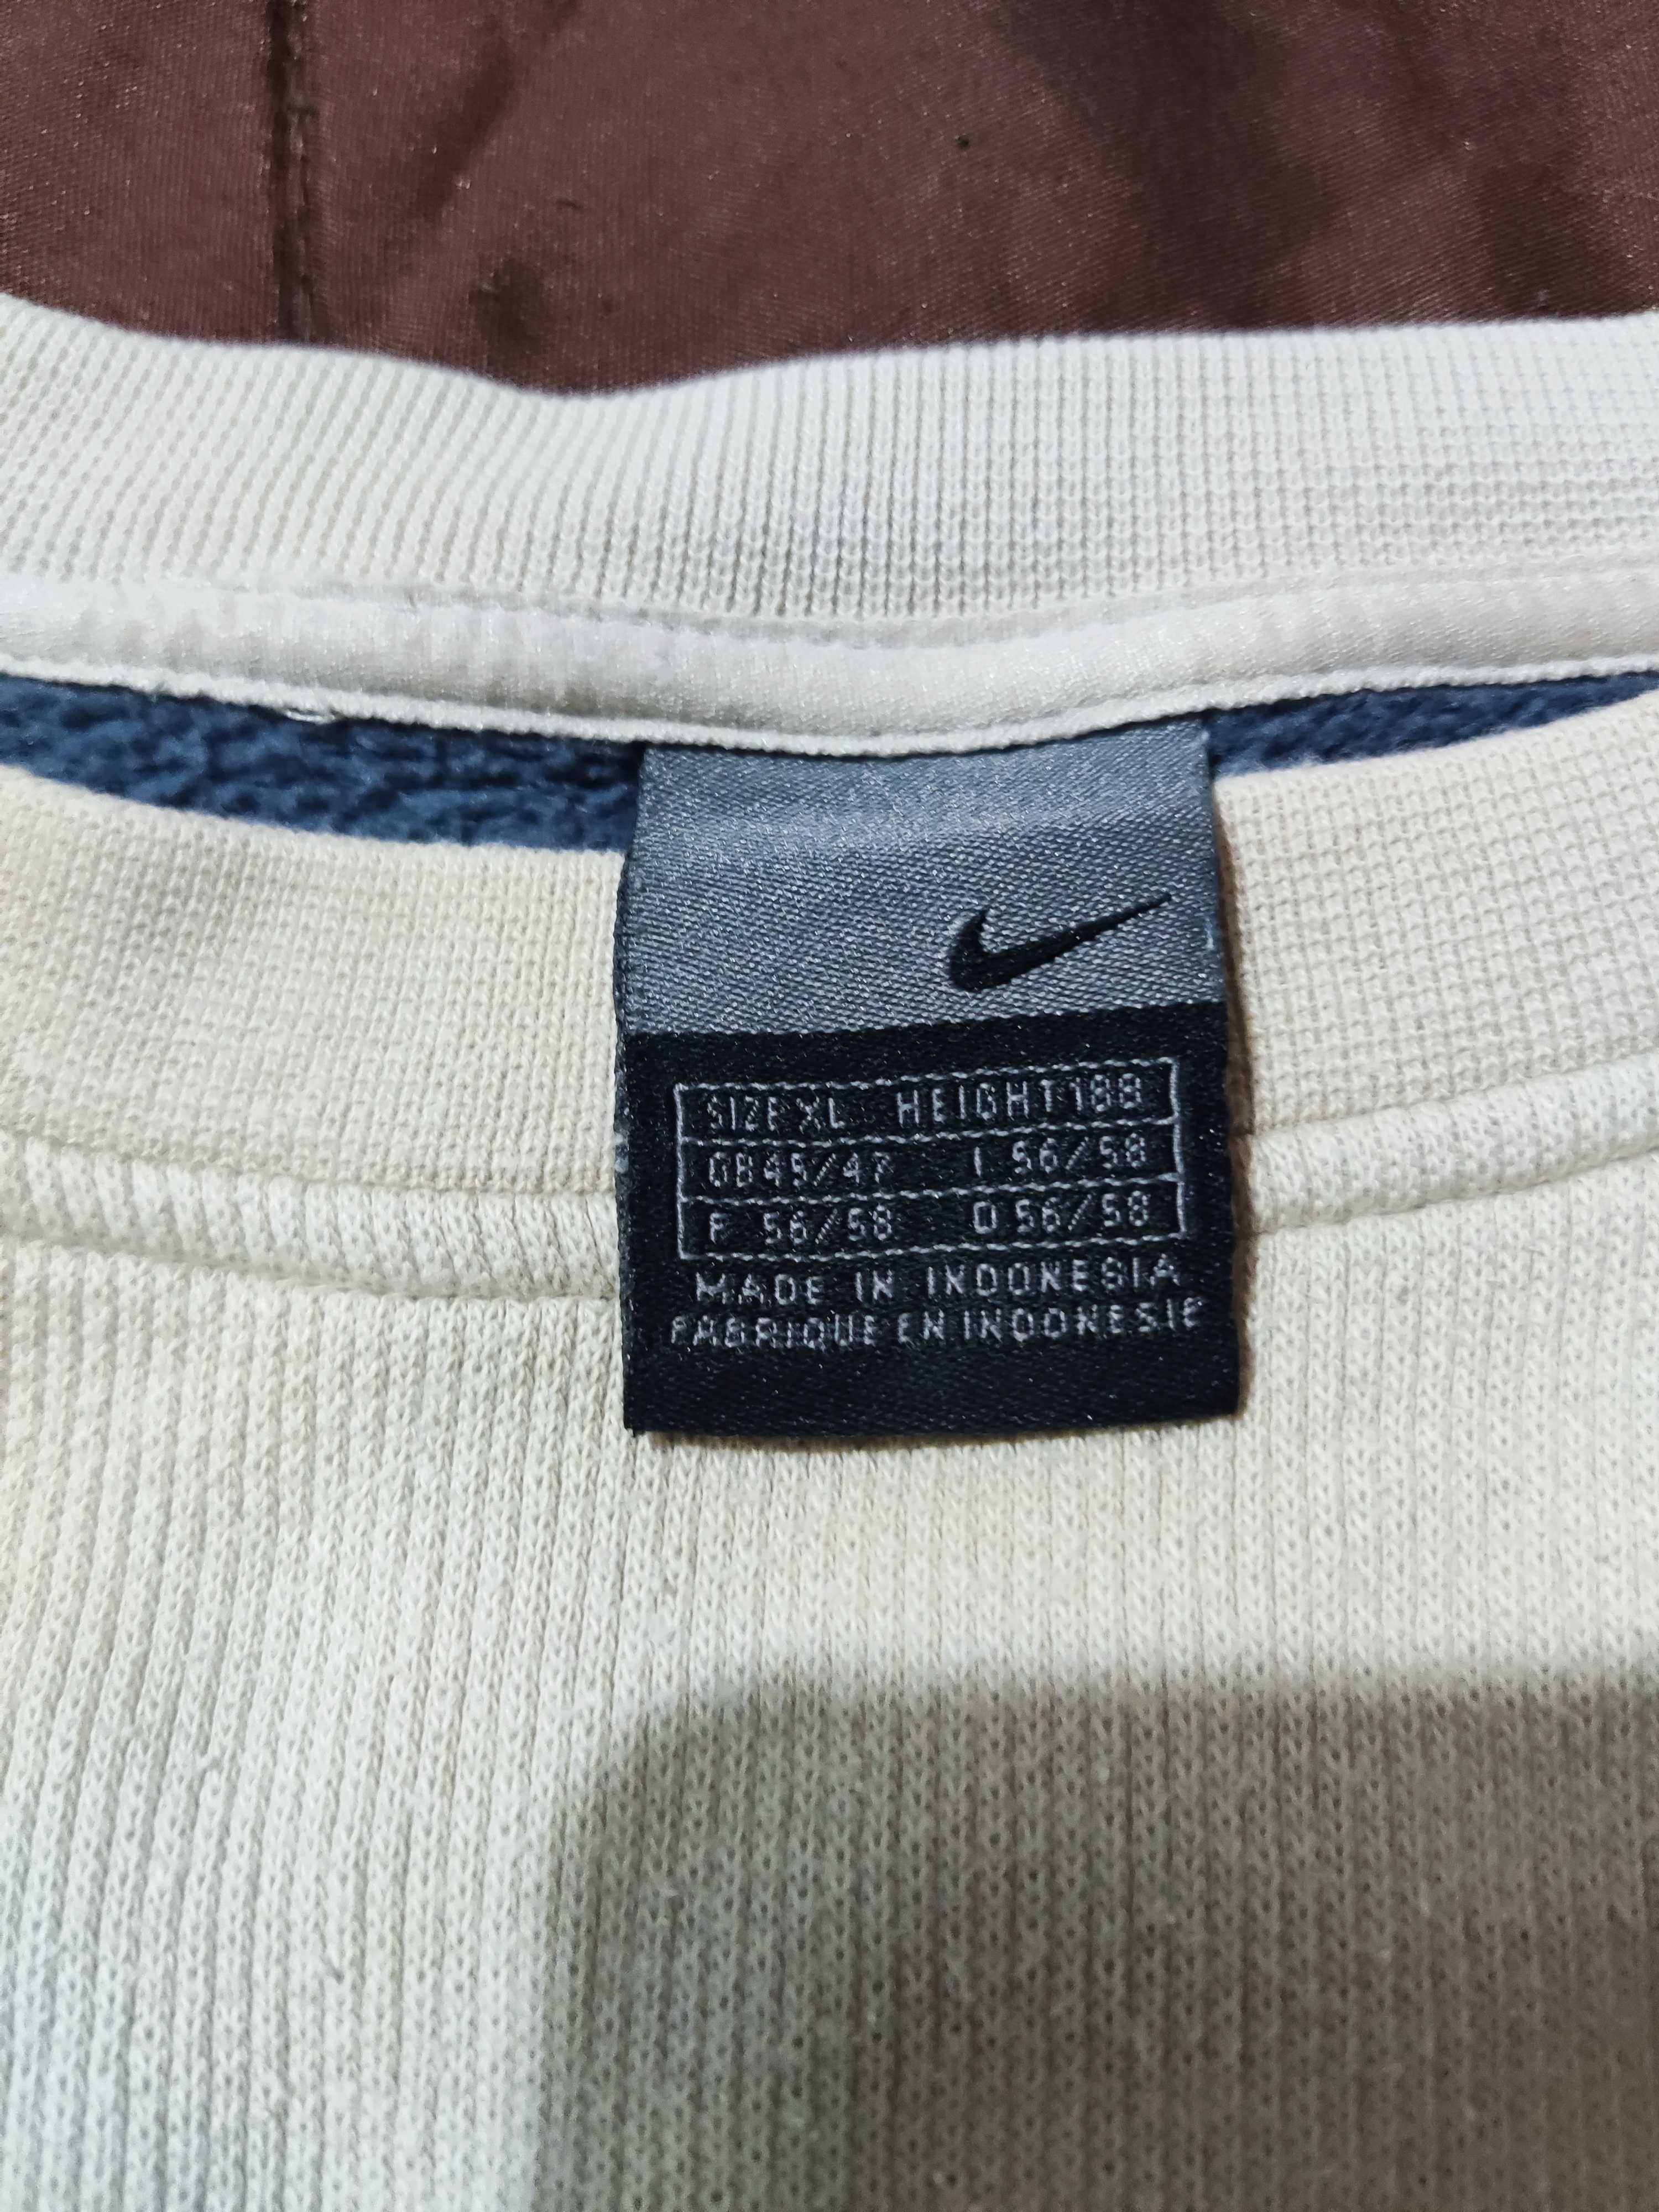 Camisola Nike Treino